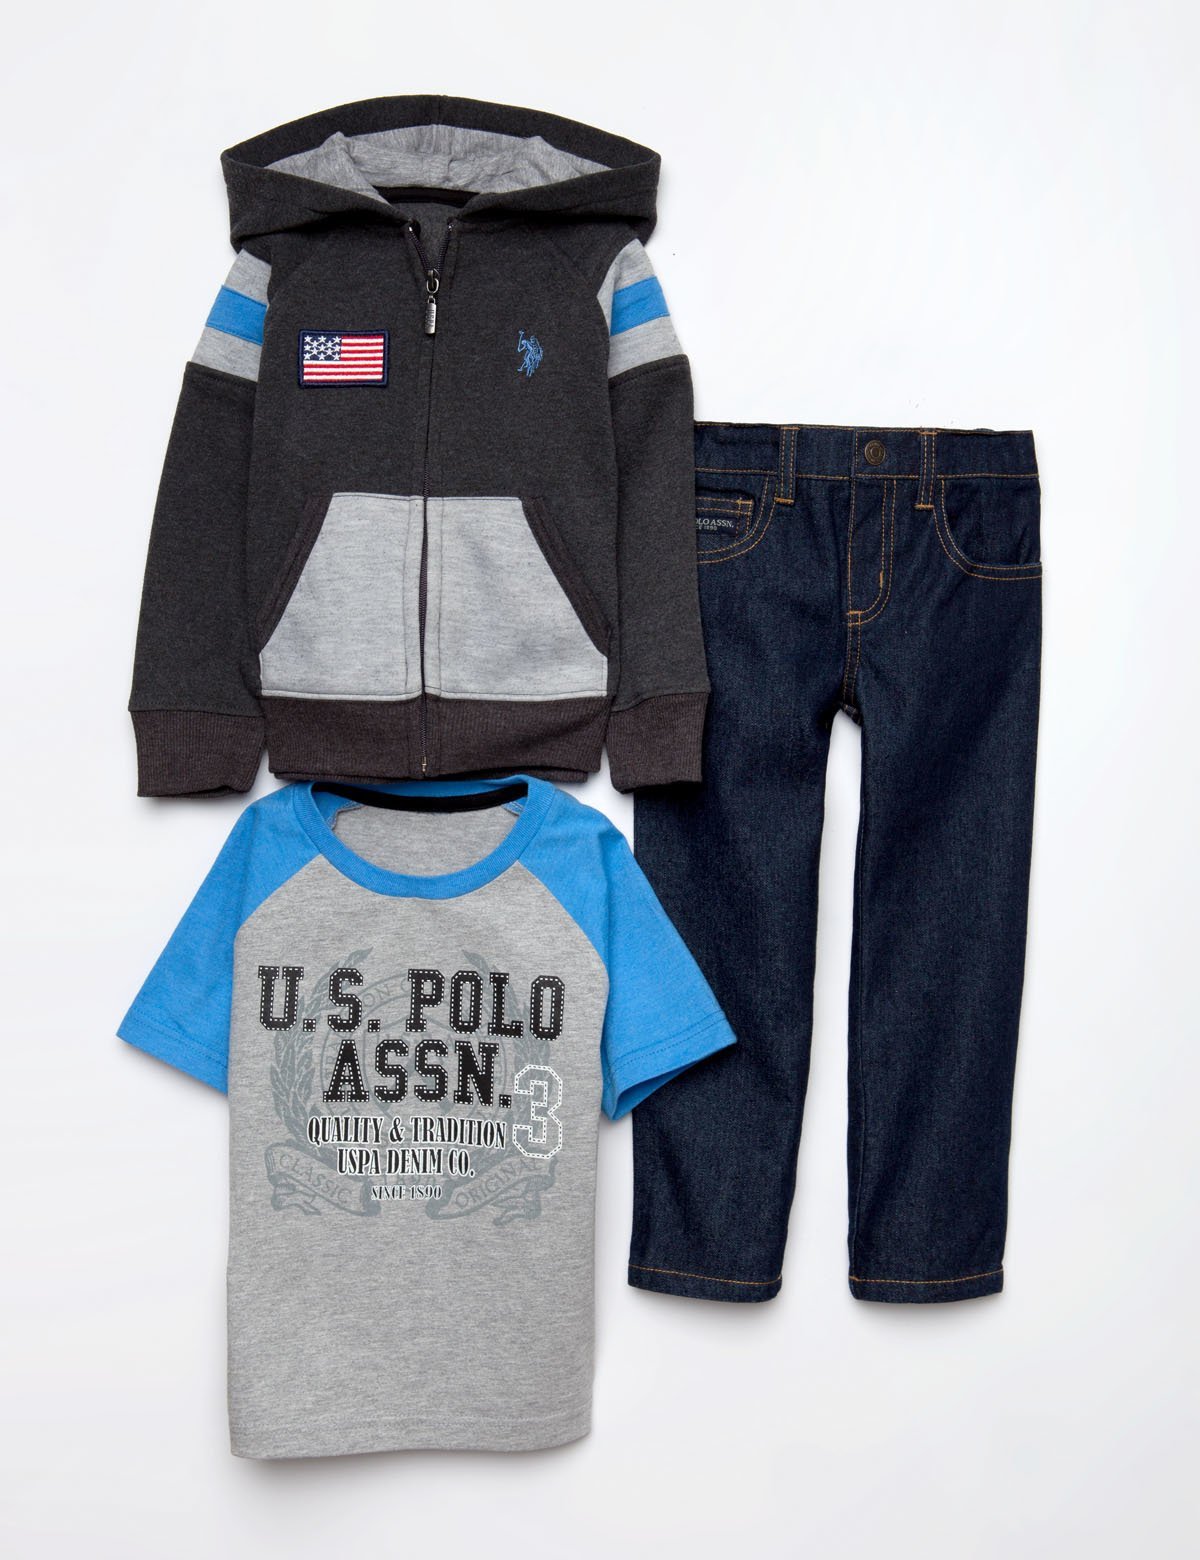 us polo baby boy clothes